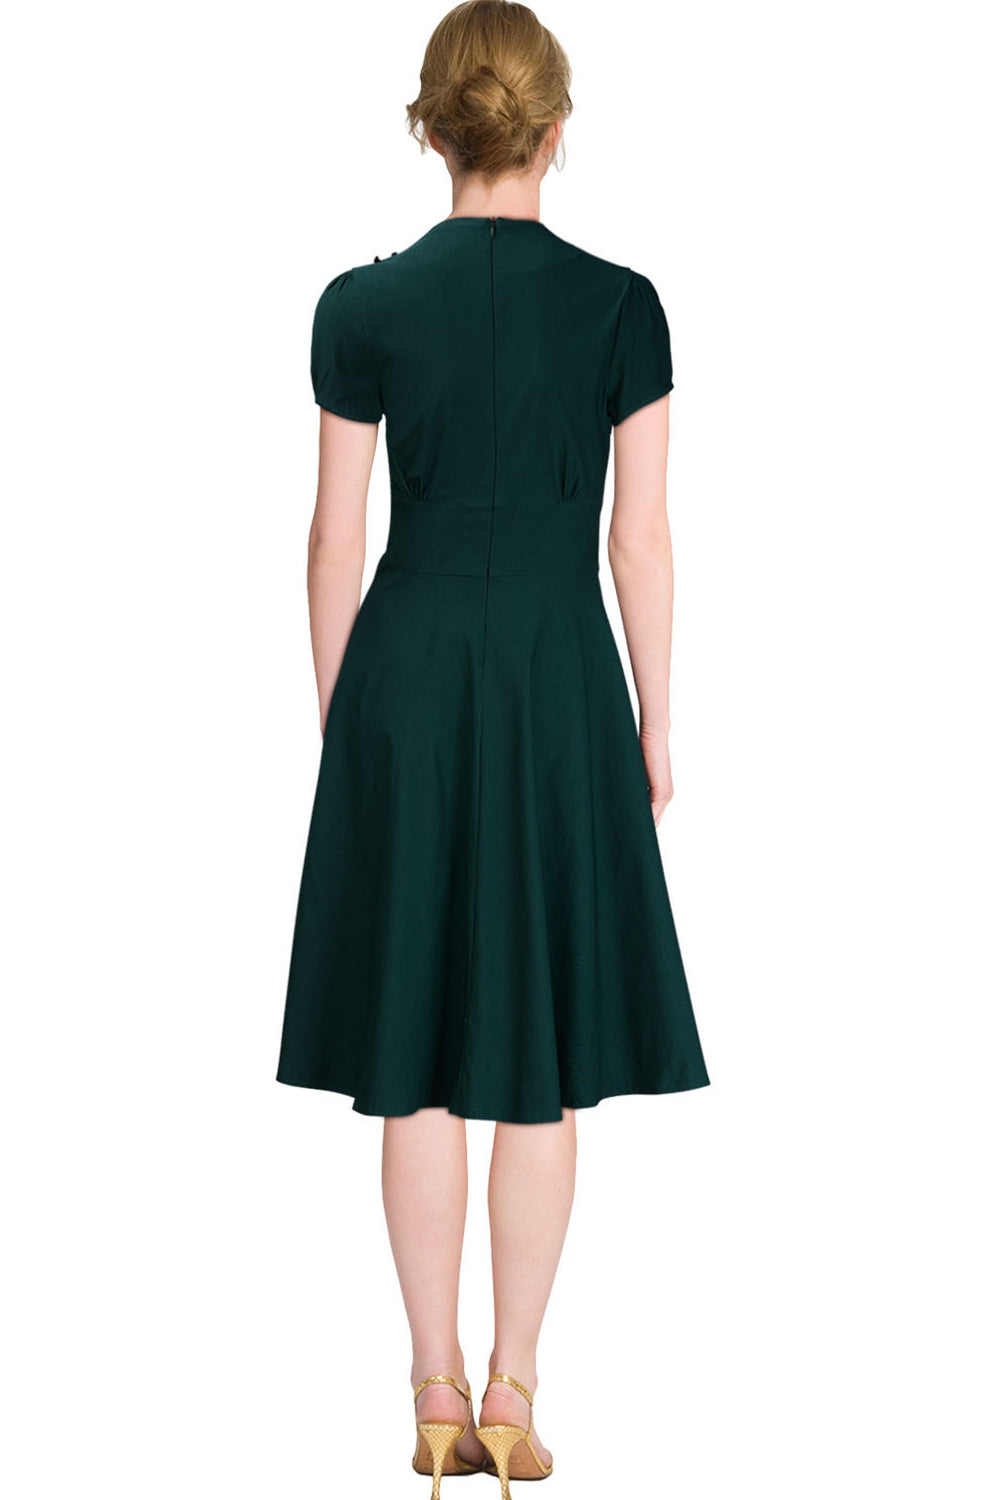 Ketty More Women Halter Style V-Neck Short Sleeves Skirt Pleated Dress-KMWD365